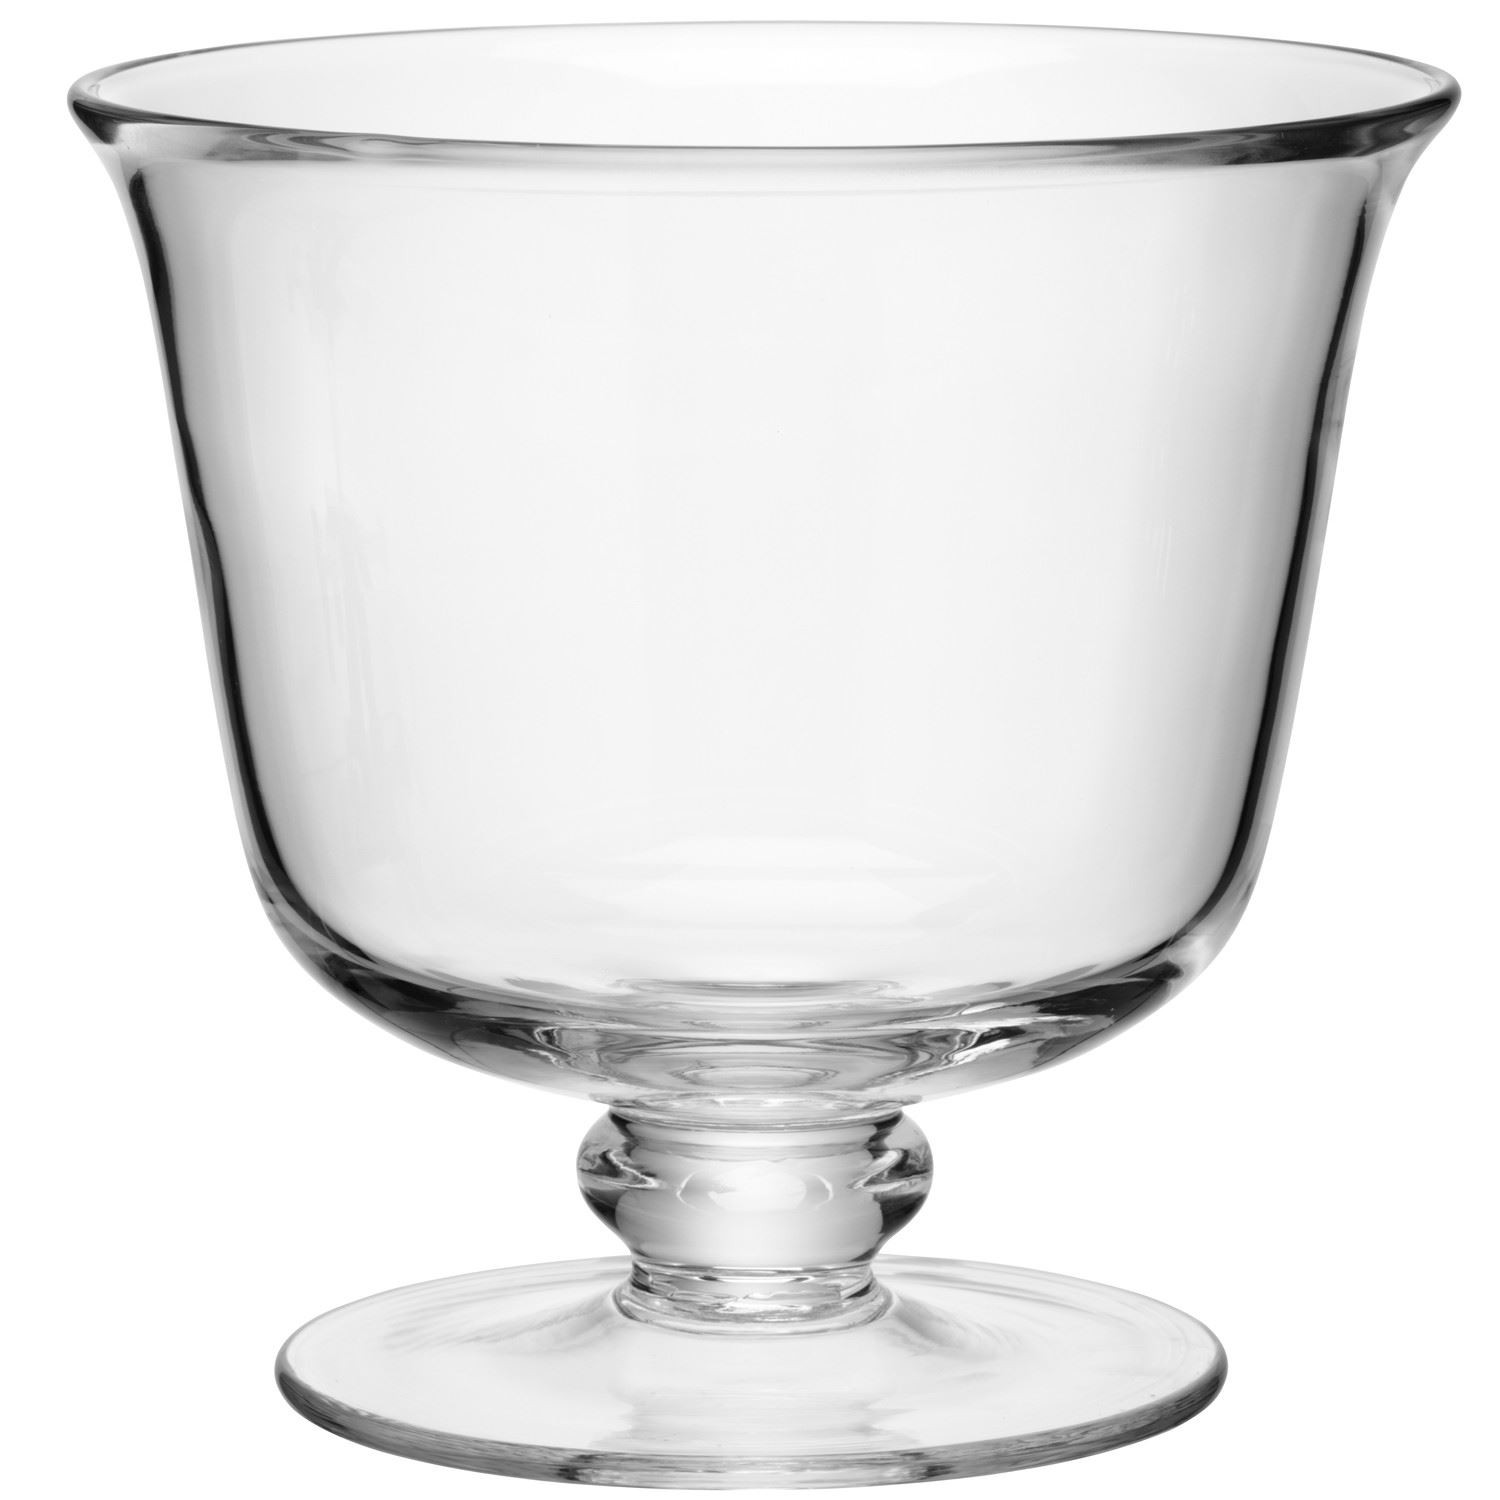 Glass Dessert Bowls
 LSA Mouthblown Glass Trifle port or Dessert Bowls Dish